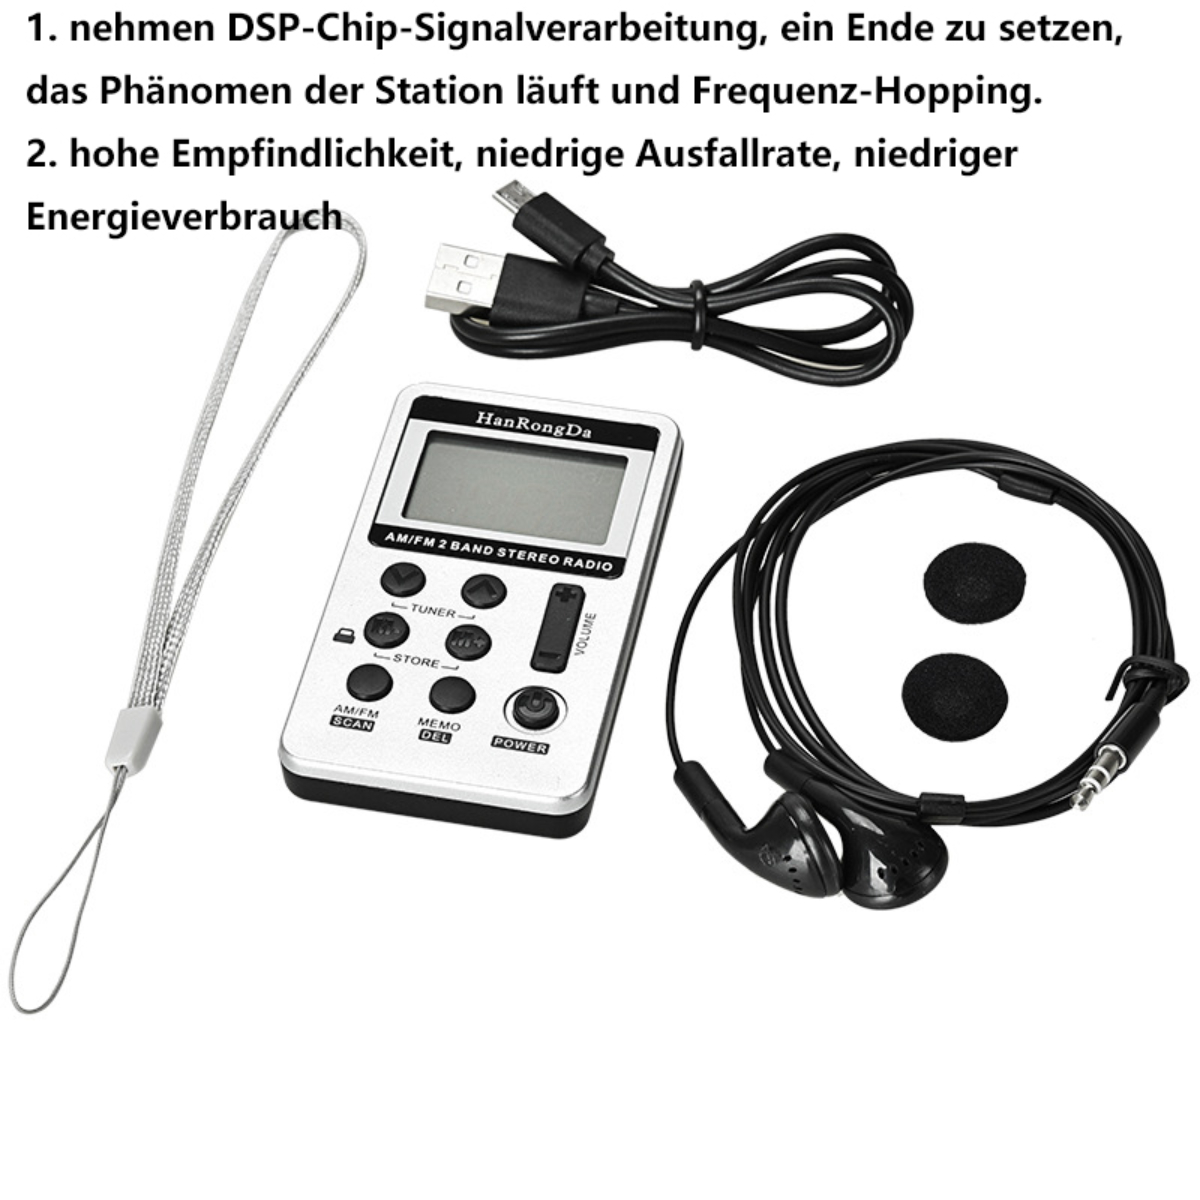 SYNTEK Tragbares Mini FM/AM 2-Band InternetRadio, AM, FM, Schwarzes Li-Ion schwarz Batterie Radio